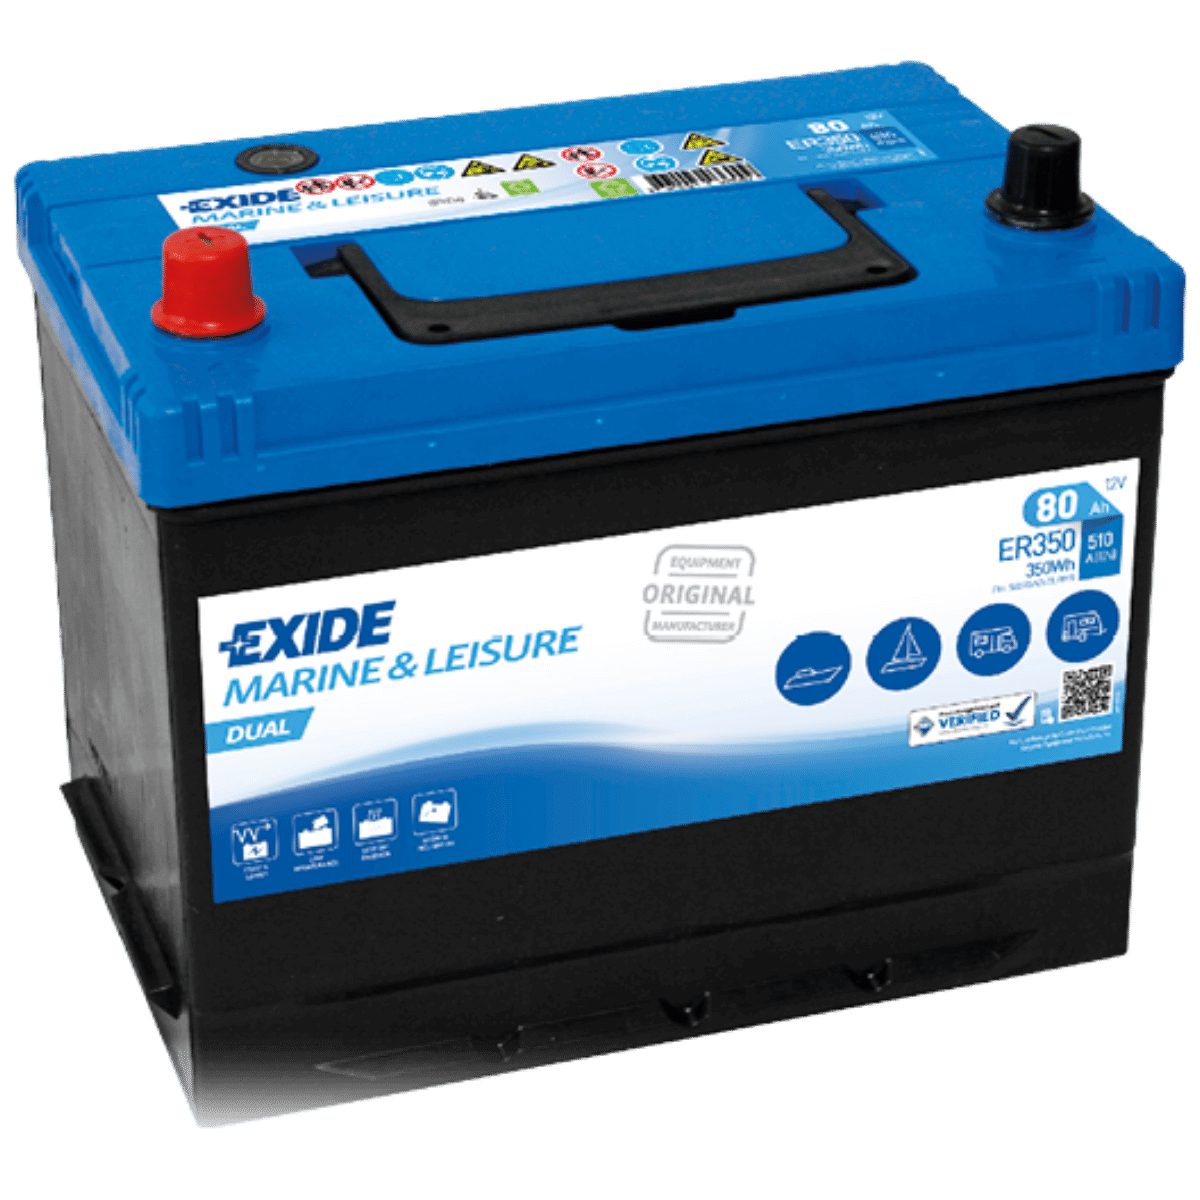 Exide Exide ER350 DUAL 12V 80Ah Versorgungsbatterie für Wohnmobil und Boot Batterie, (12 V)